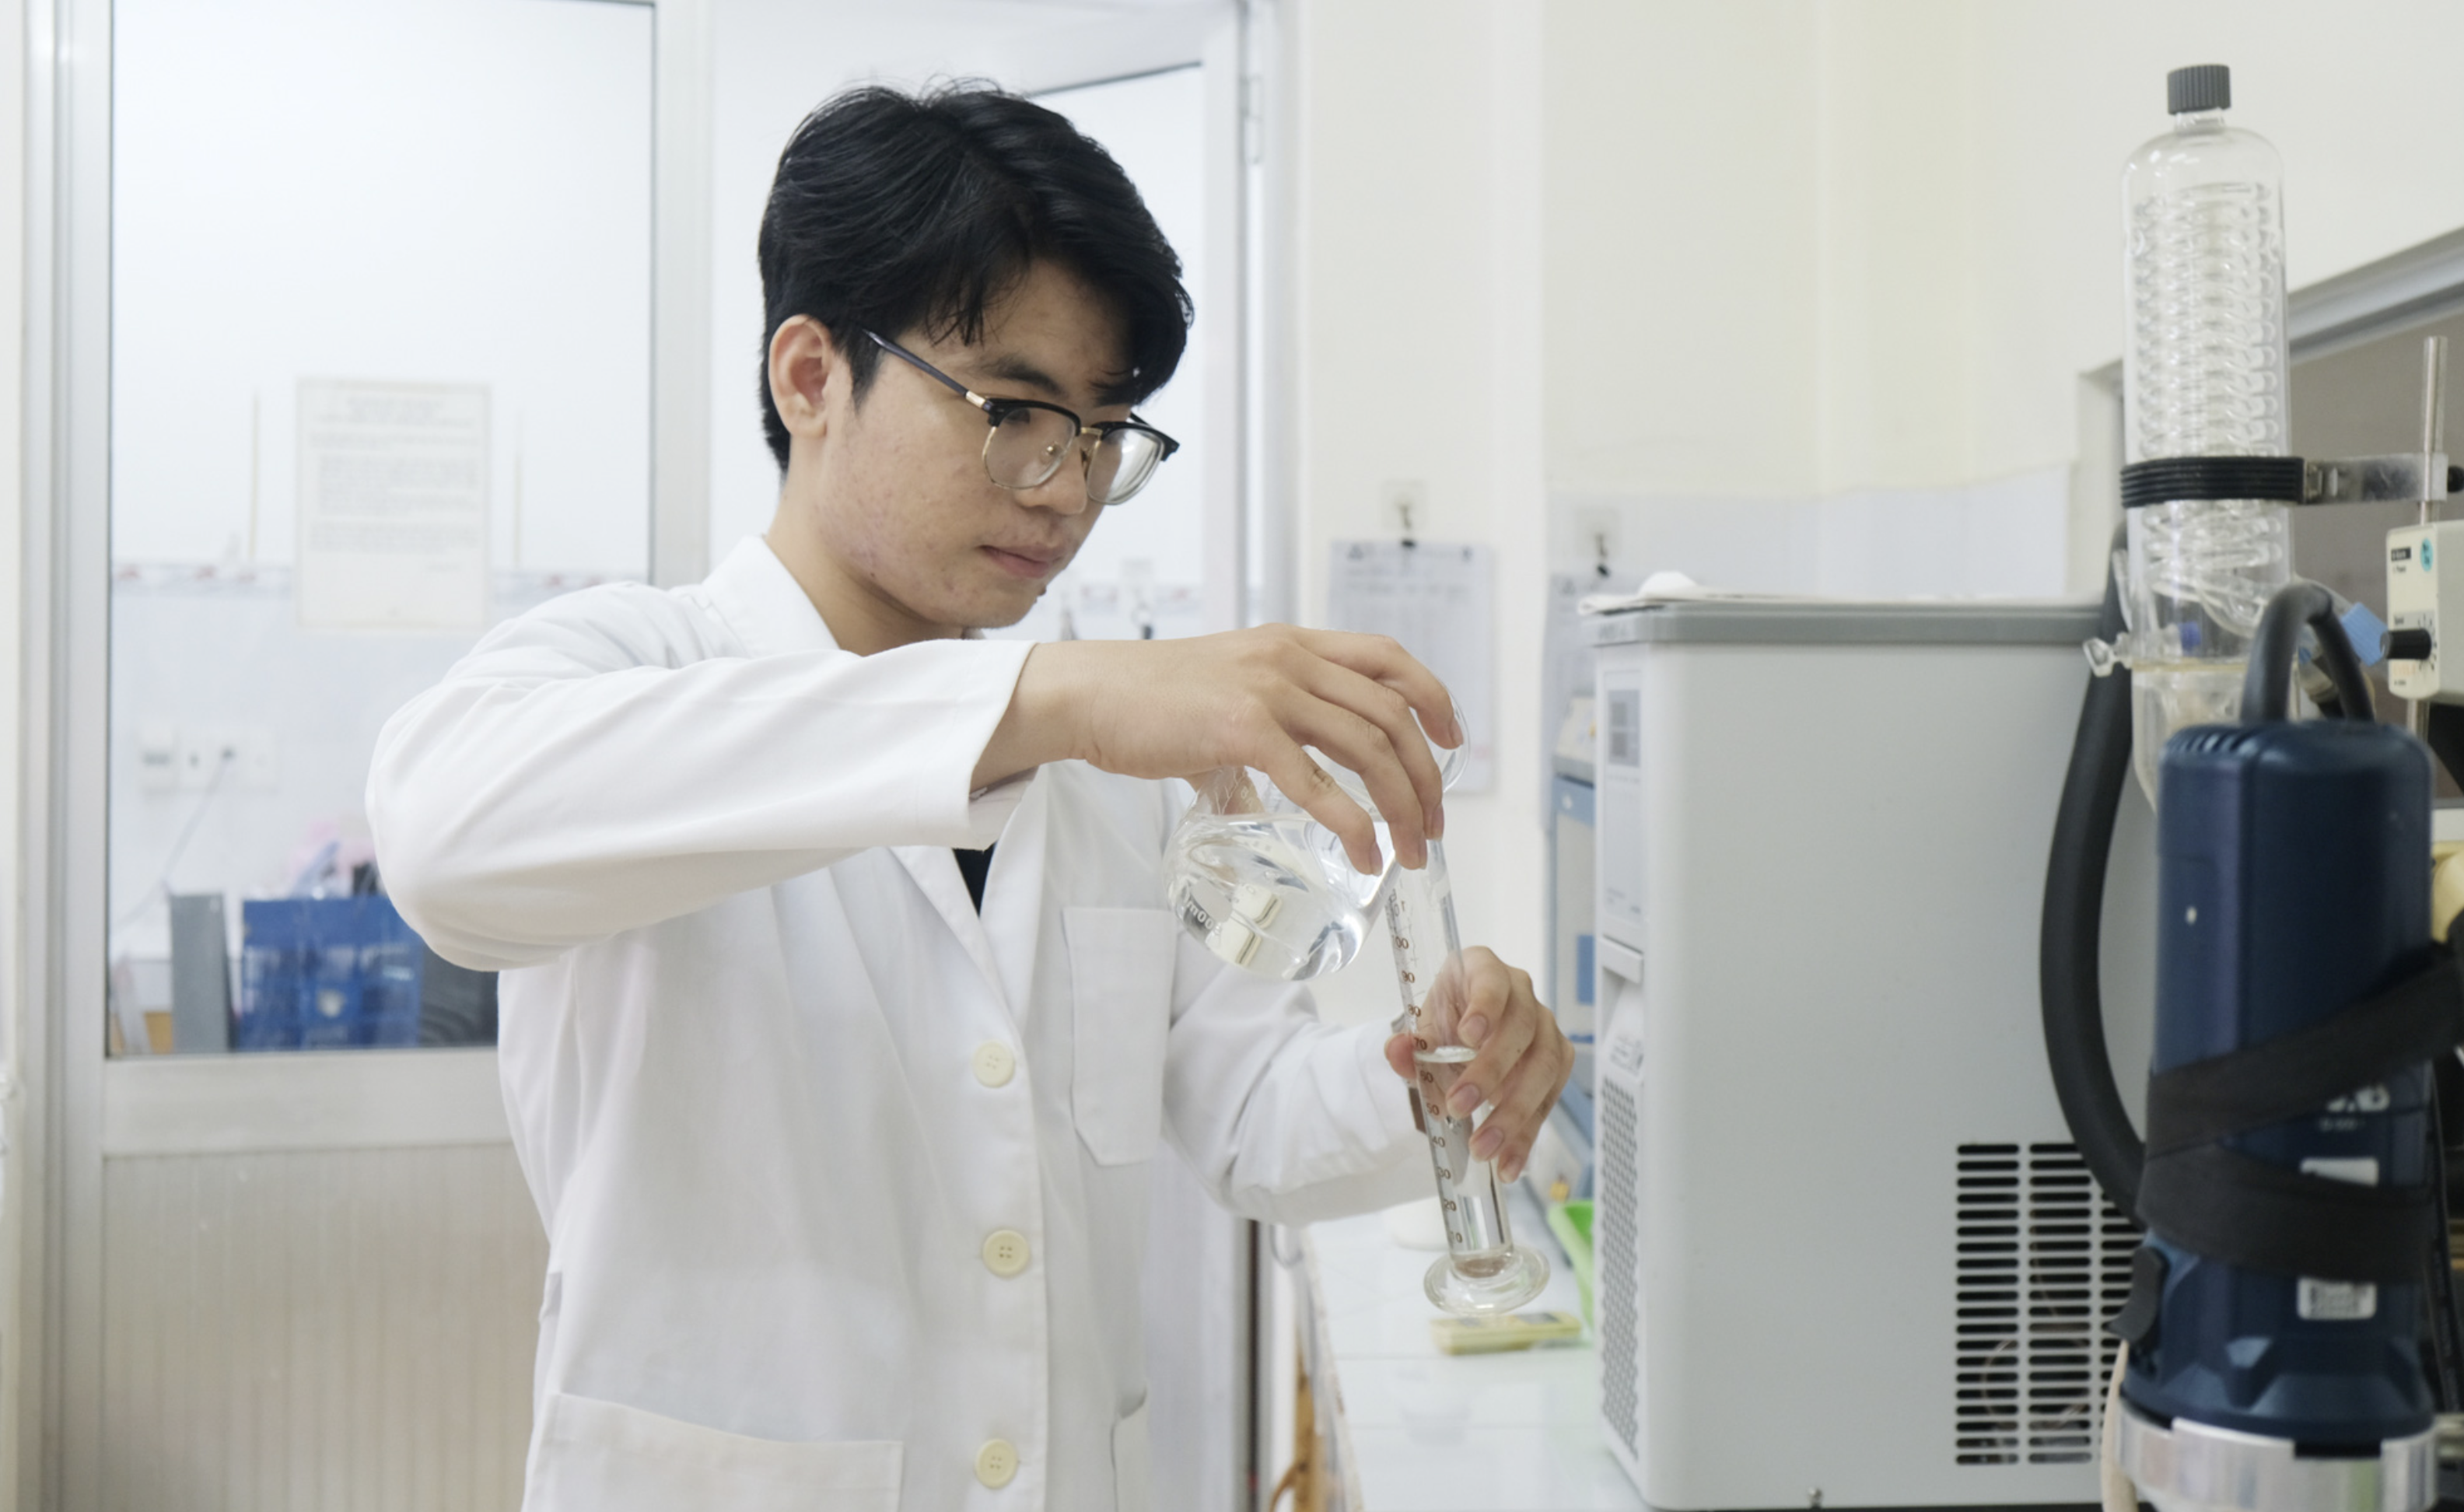 Vietnamese university student creates laundry, dishwashing detergent